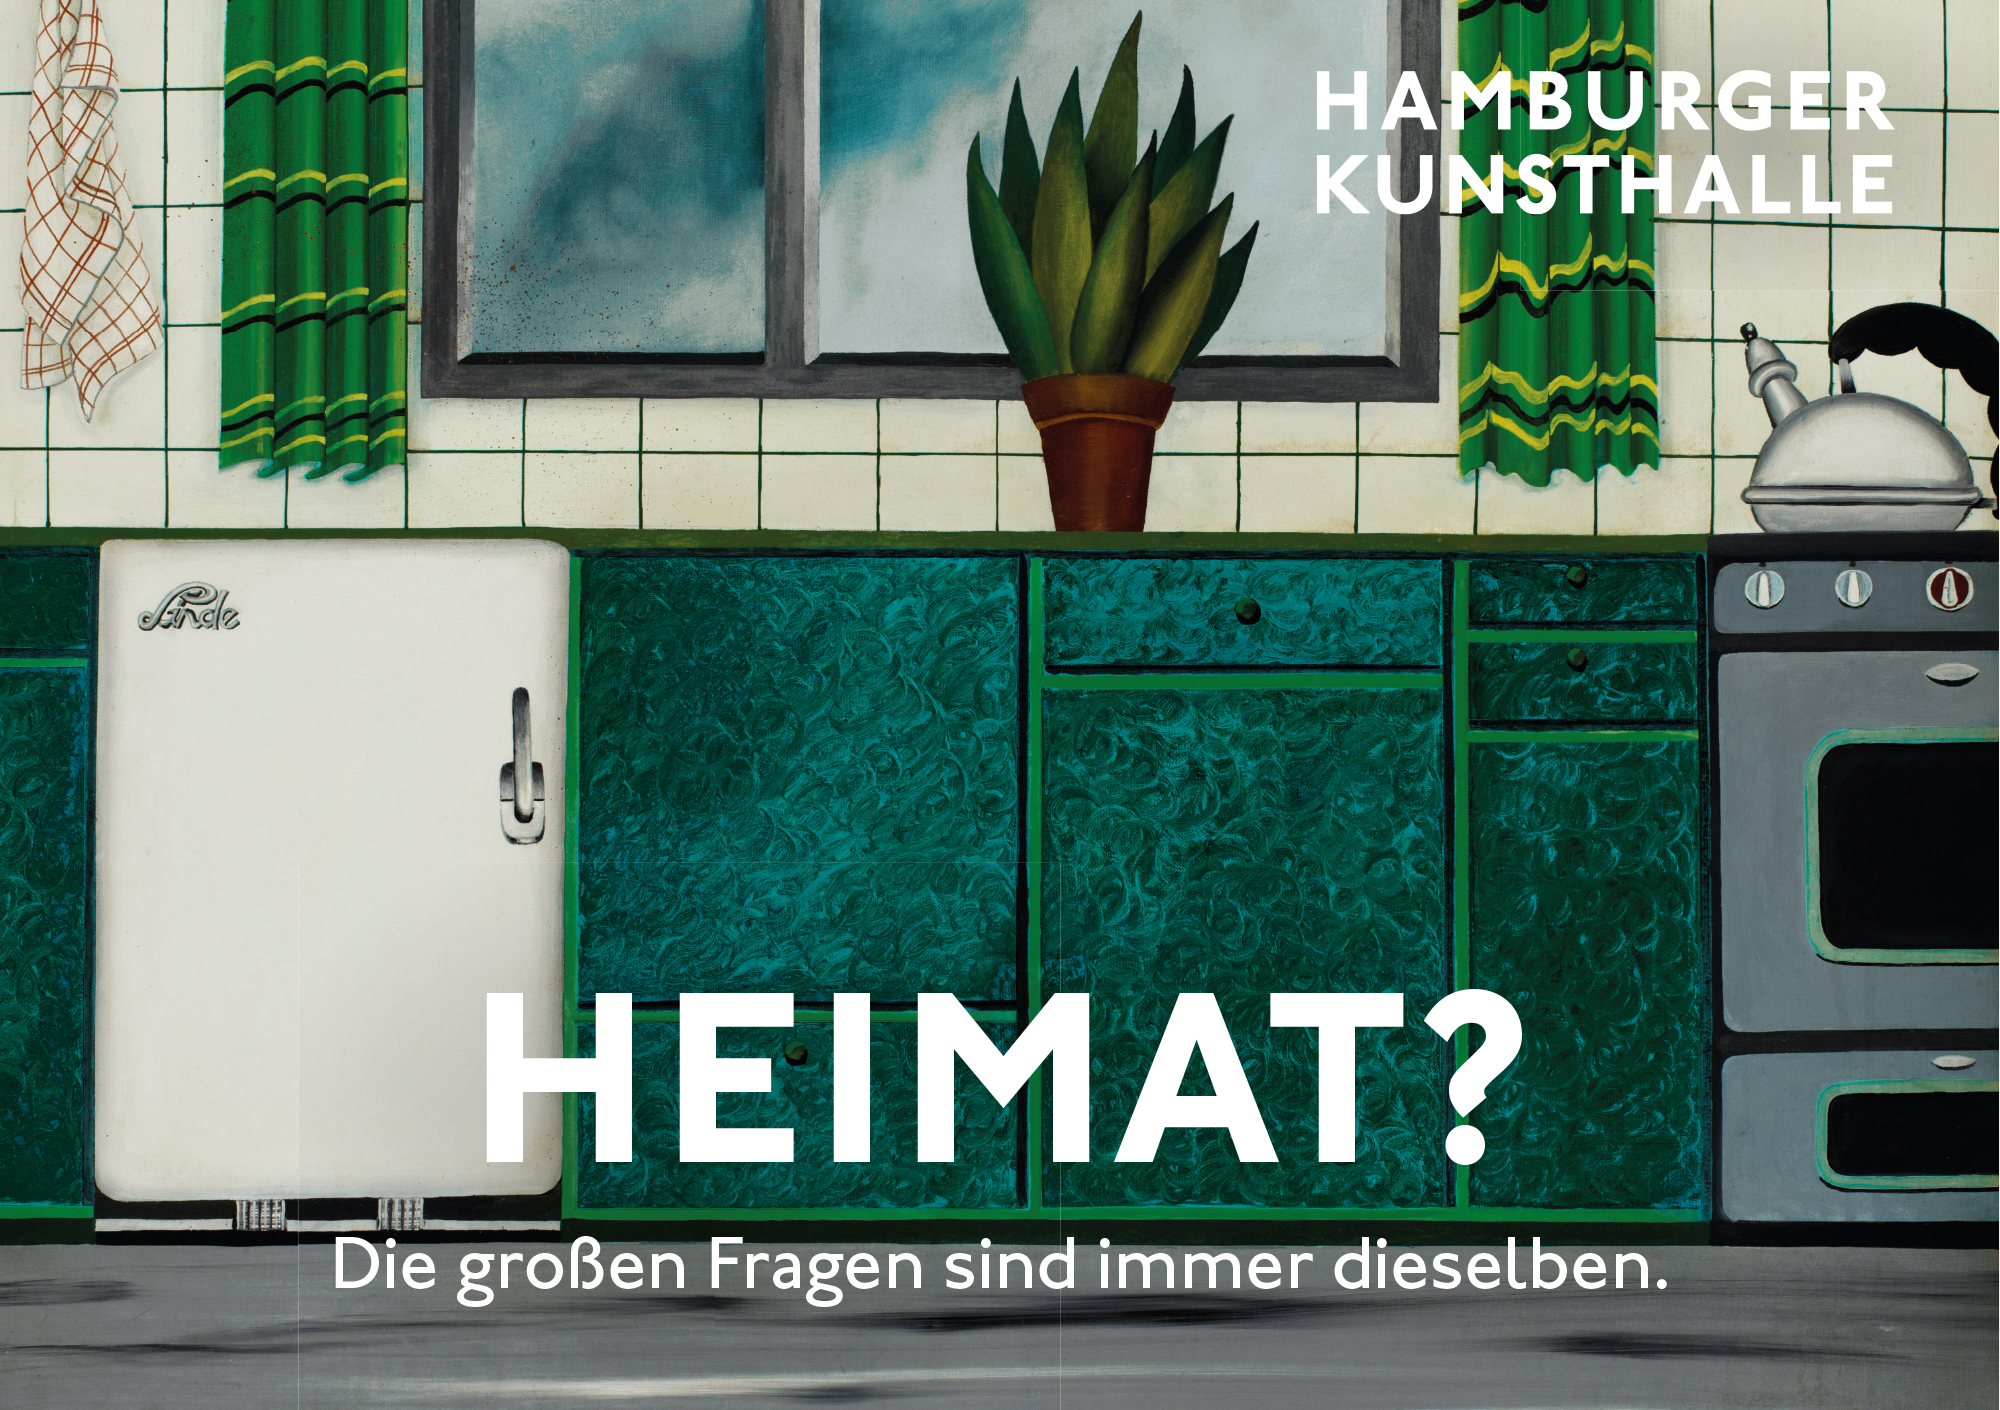 Die Großen Fragen, Heimat, Kampagne der Hamburger Kunsthalle, Entwurf Heine/Lenz/Zizka